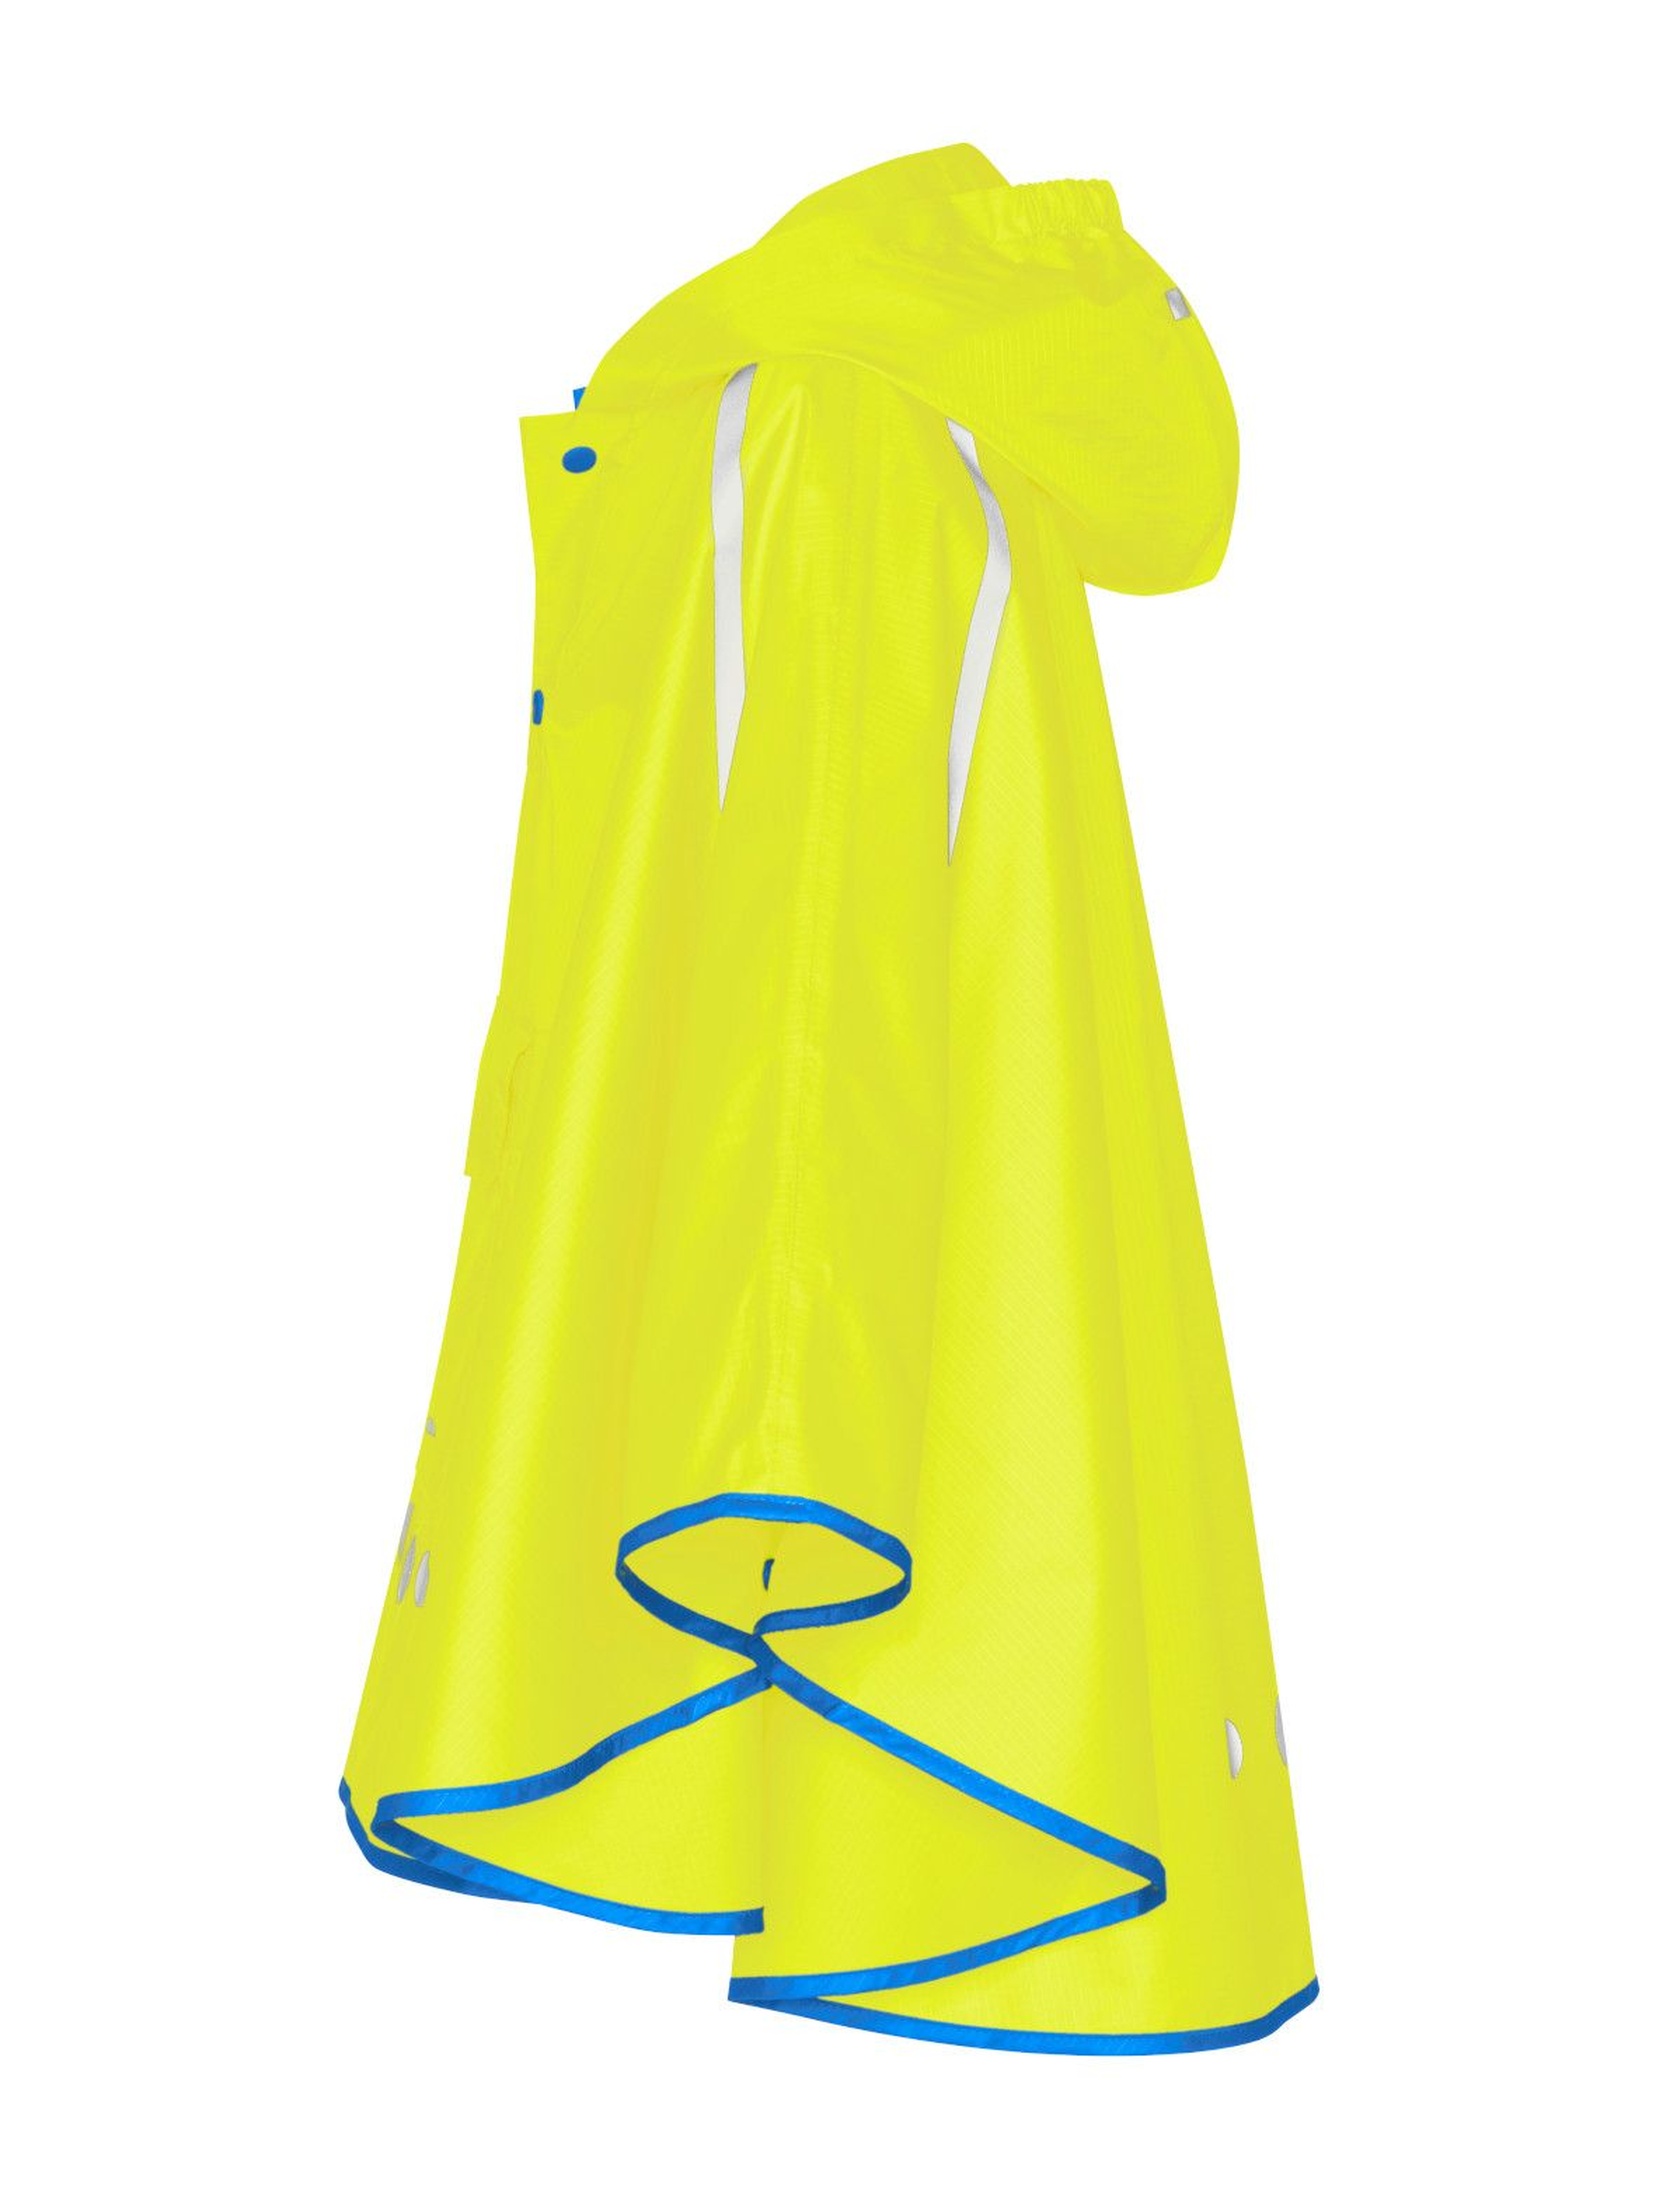 Poncho przeciwdeszczowe składane do torebki żółte